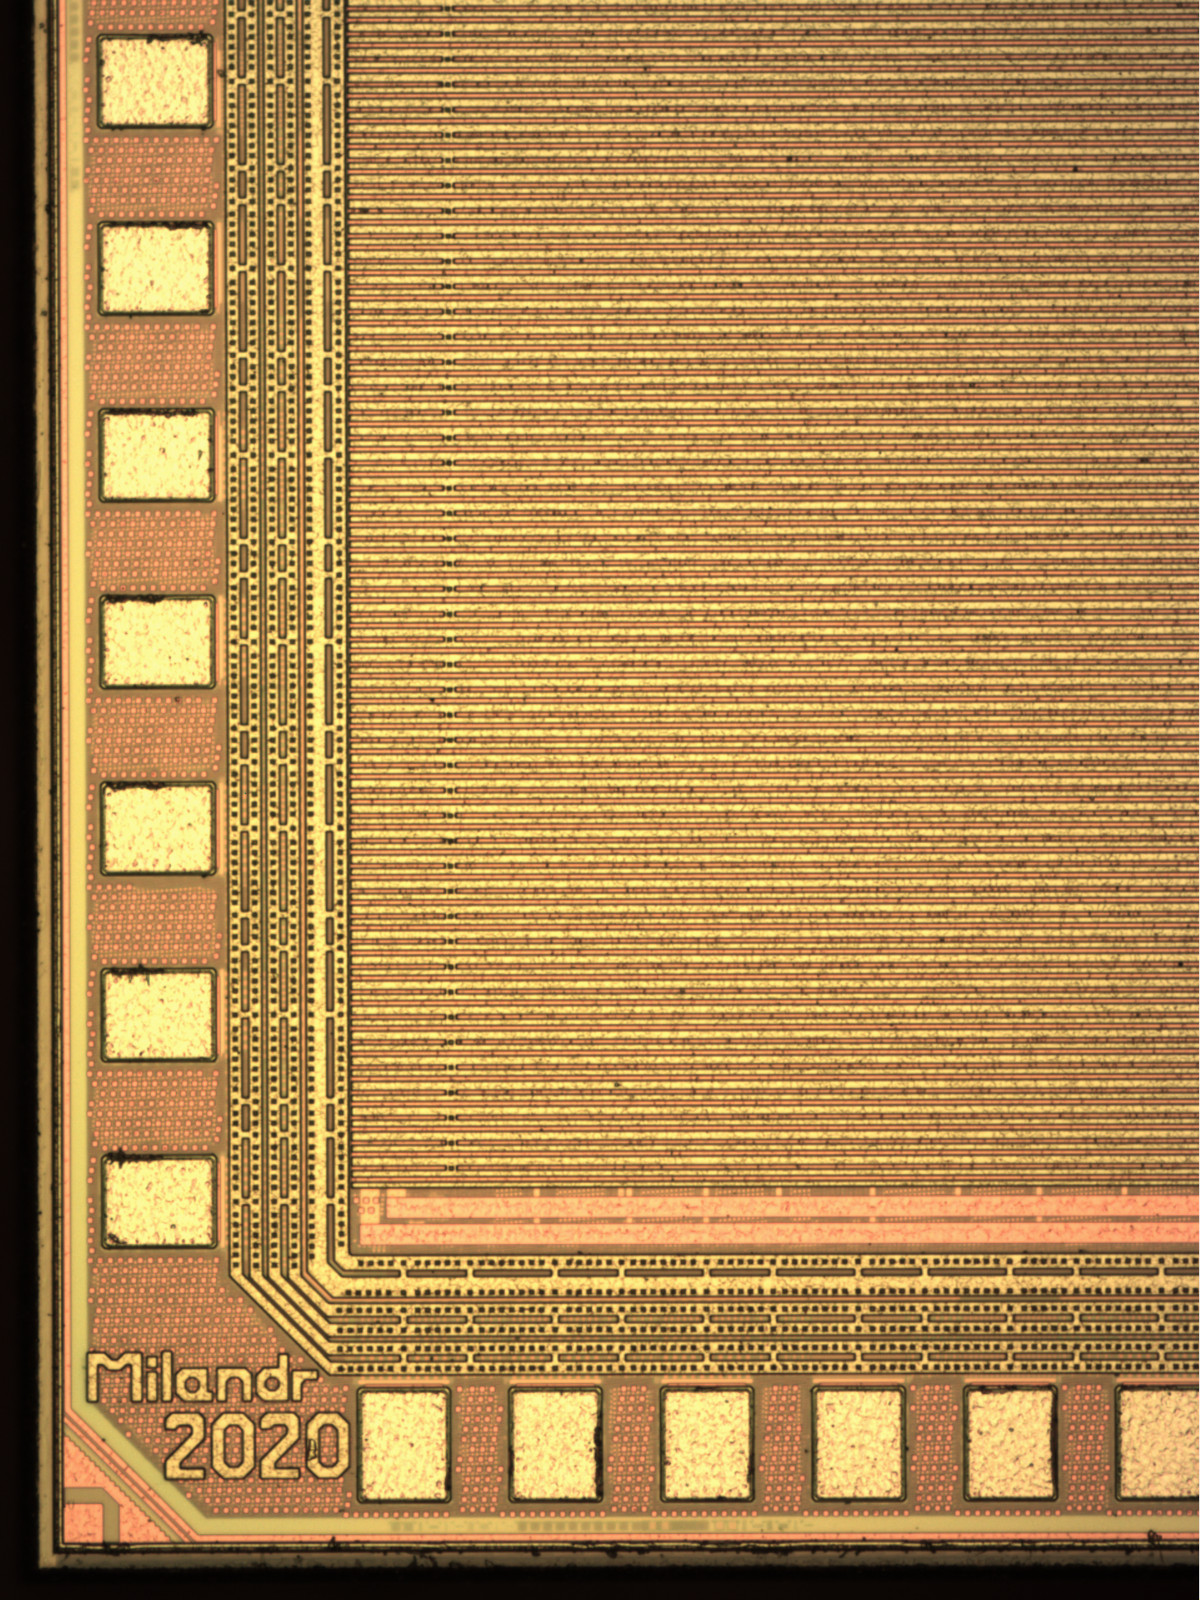 Отечественный микроконтроллер К1986ВК025 на базе процессорного ядра RISC-V для приборов учета электроэнергии - 6